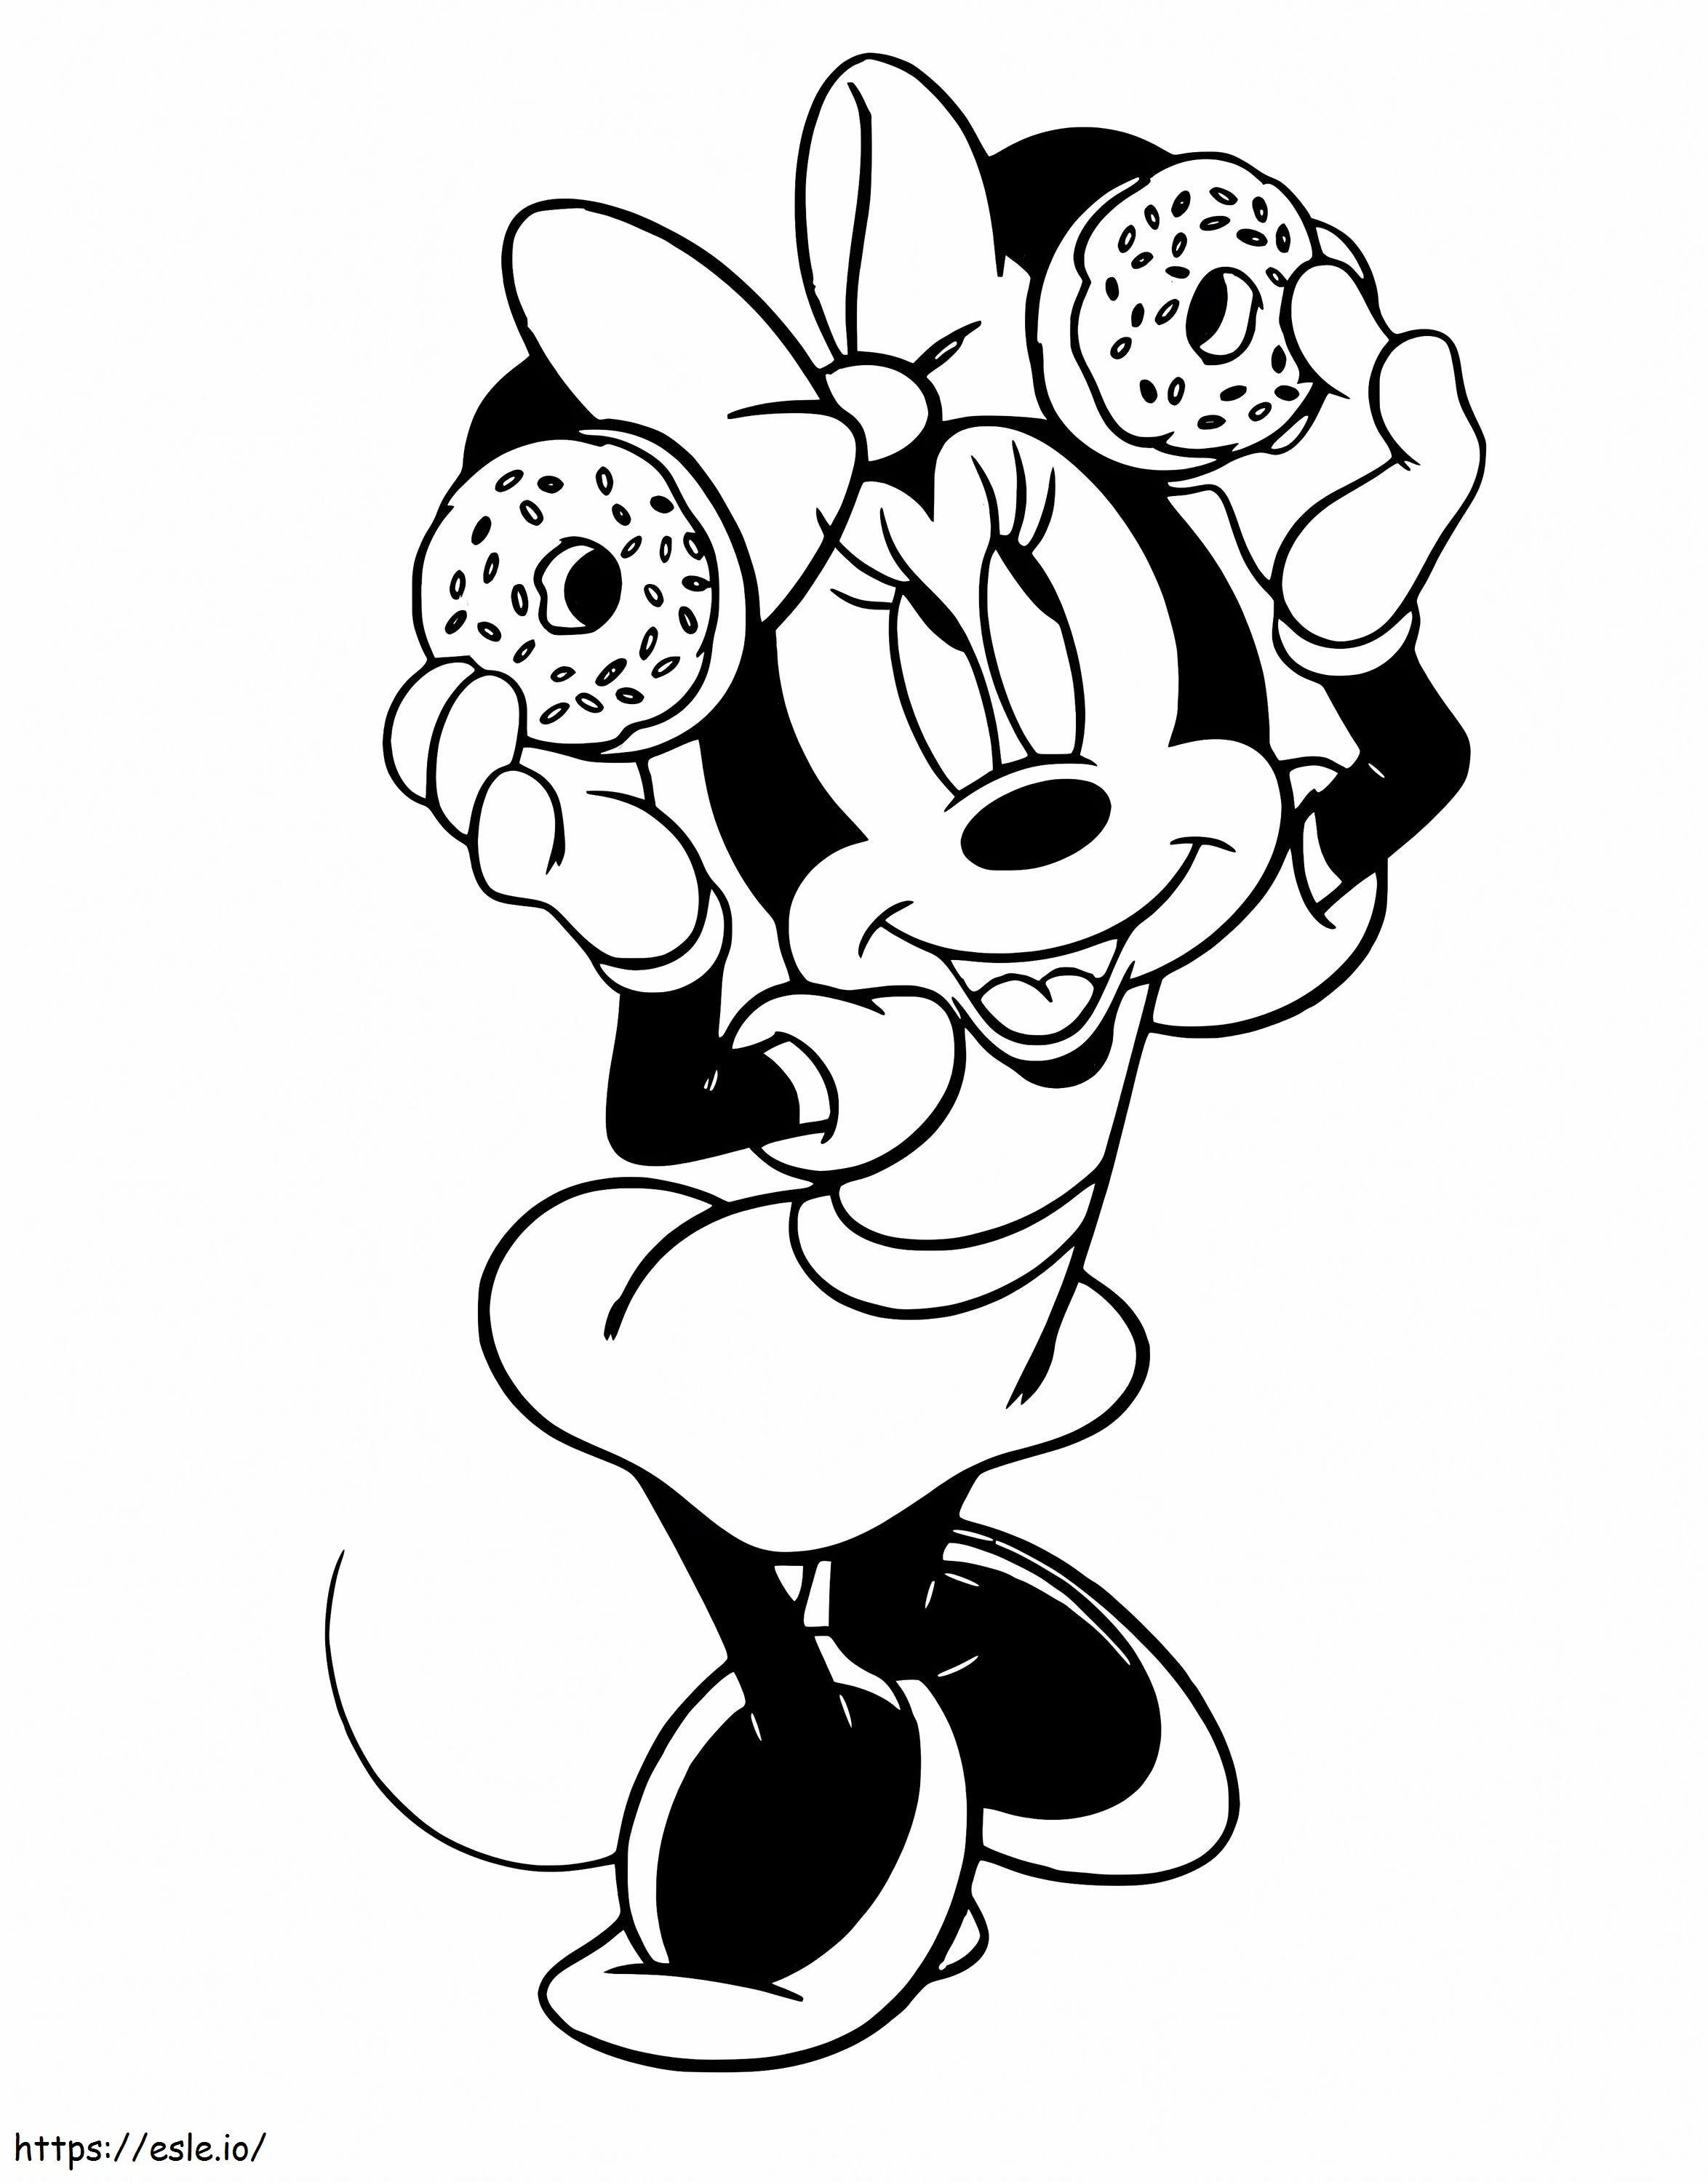 Minnie Mouse ținând în mână două gogoși de colorat